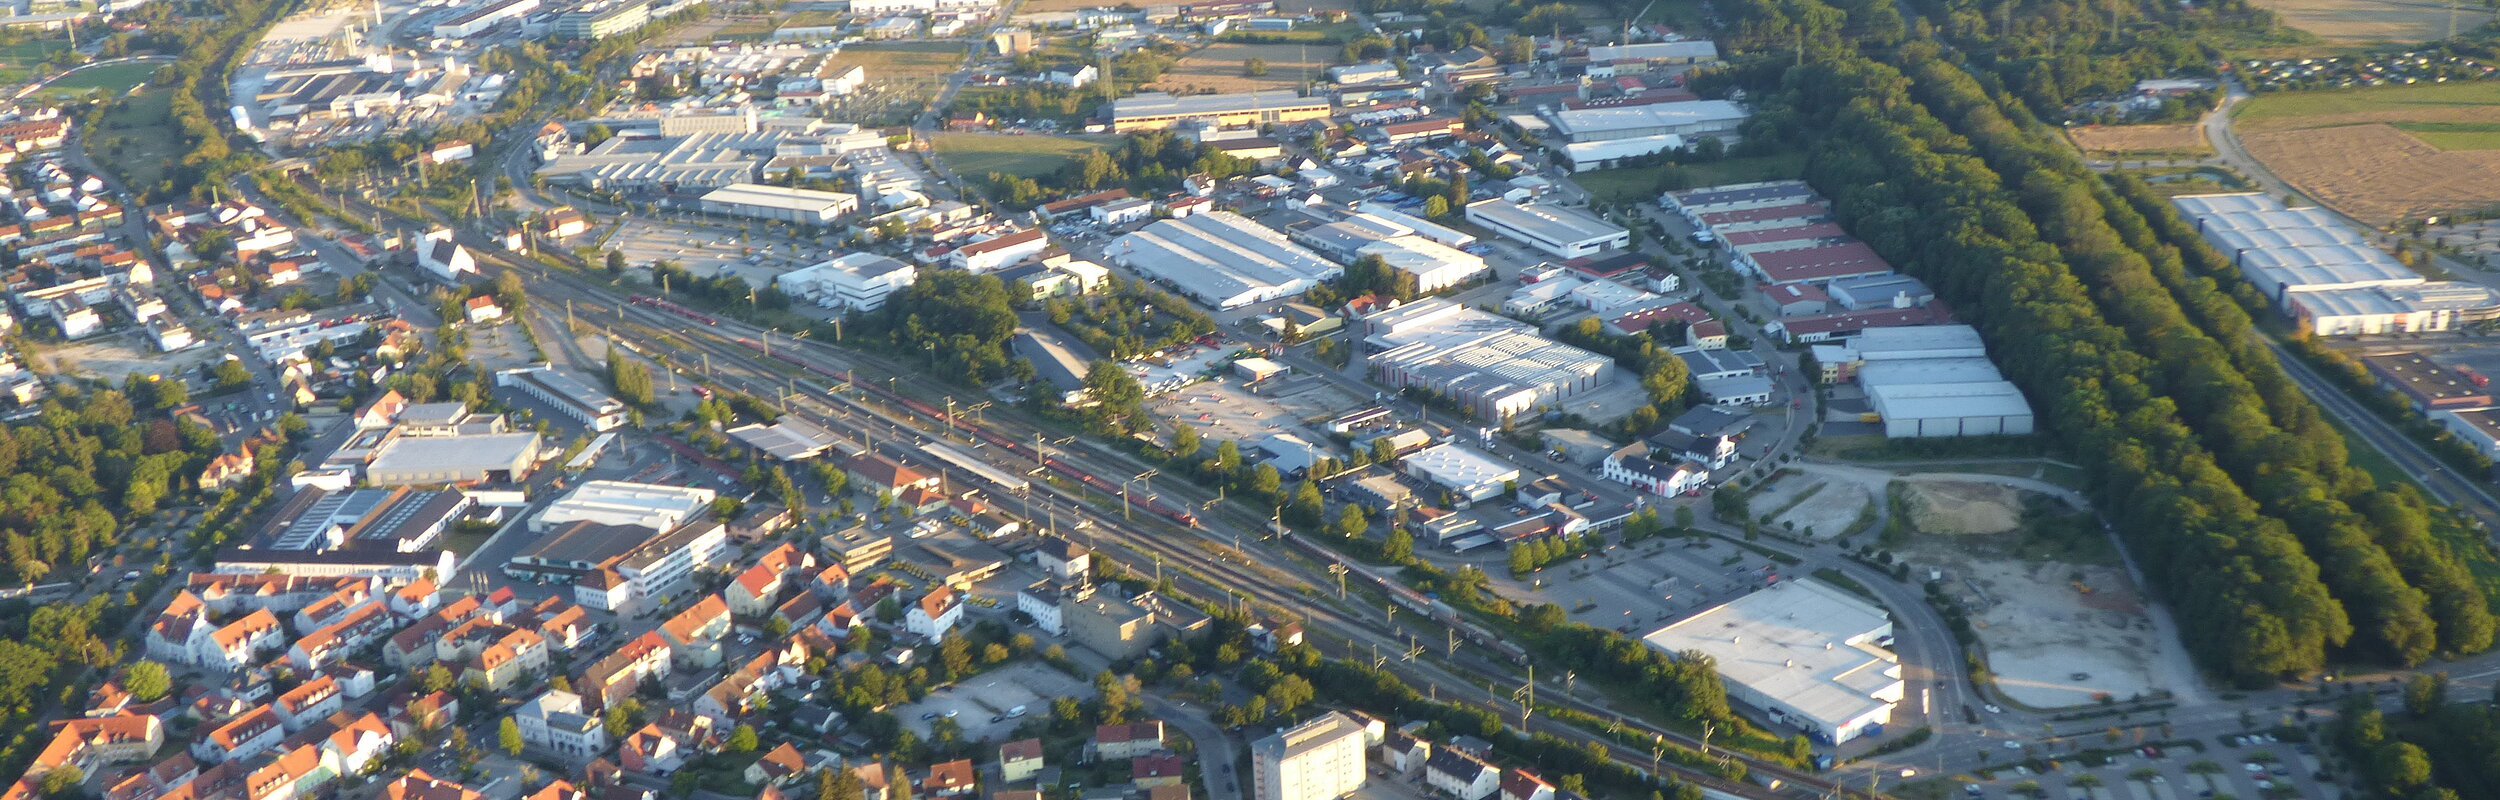 Luftaufnahme vom Bahnhof Neumarkt